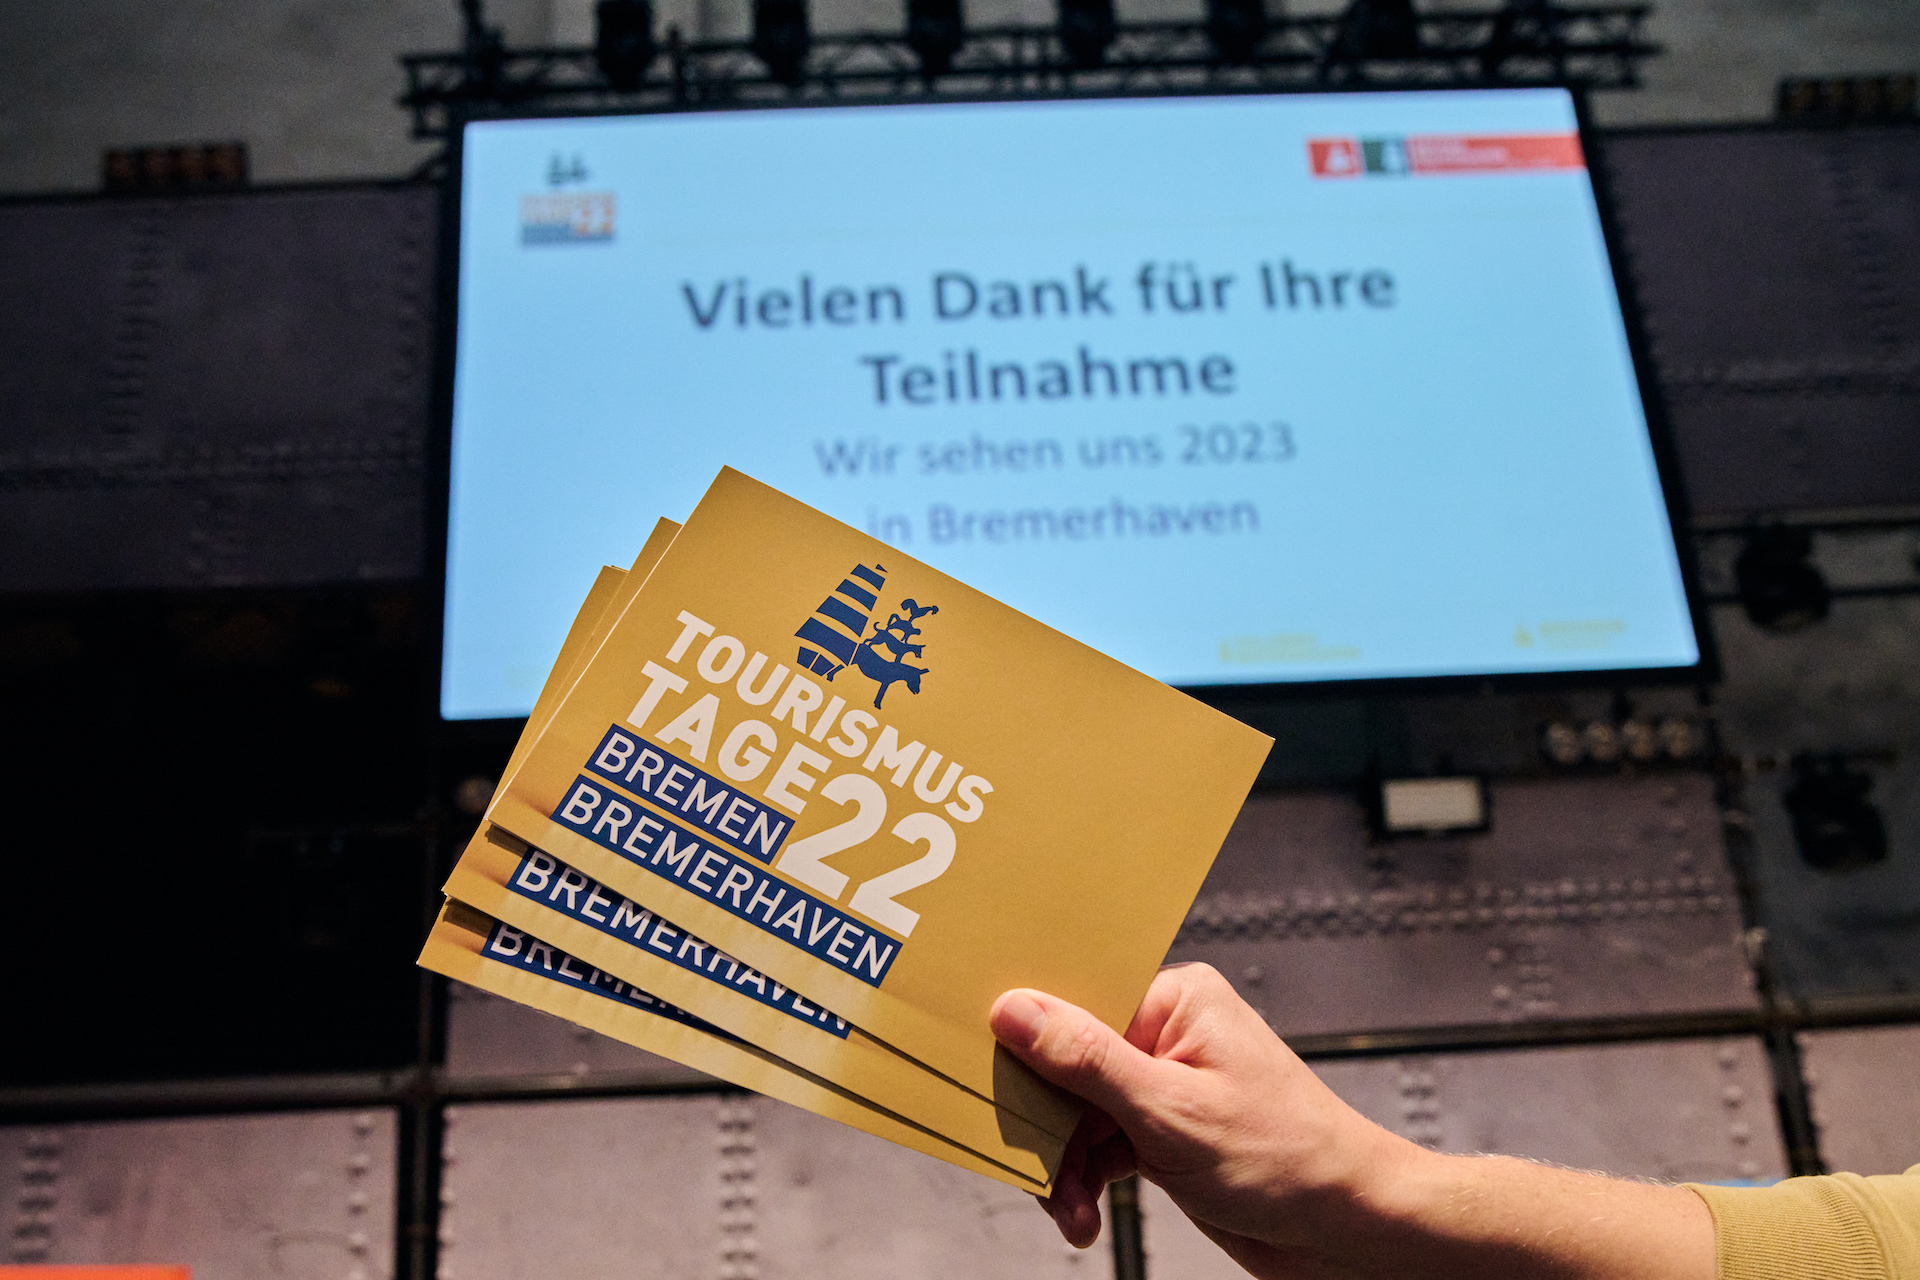 Eine Hand hält drei Karten in Der Hand. Auf diesen Karten steht Tourismustage 2022 Bremen Bremerhaven